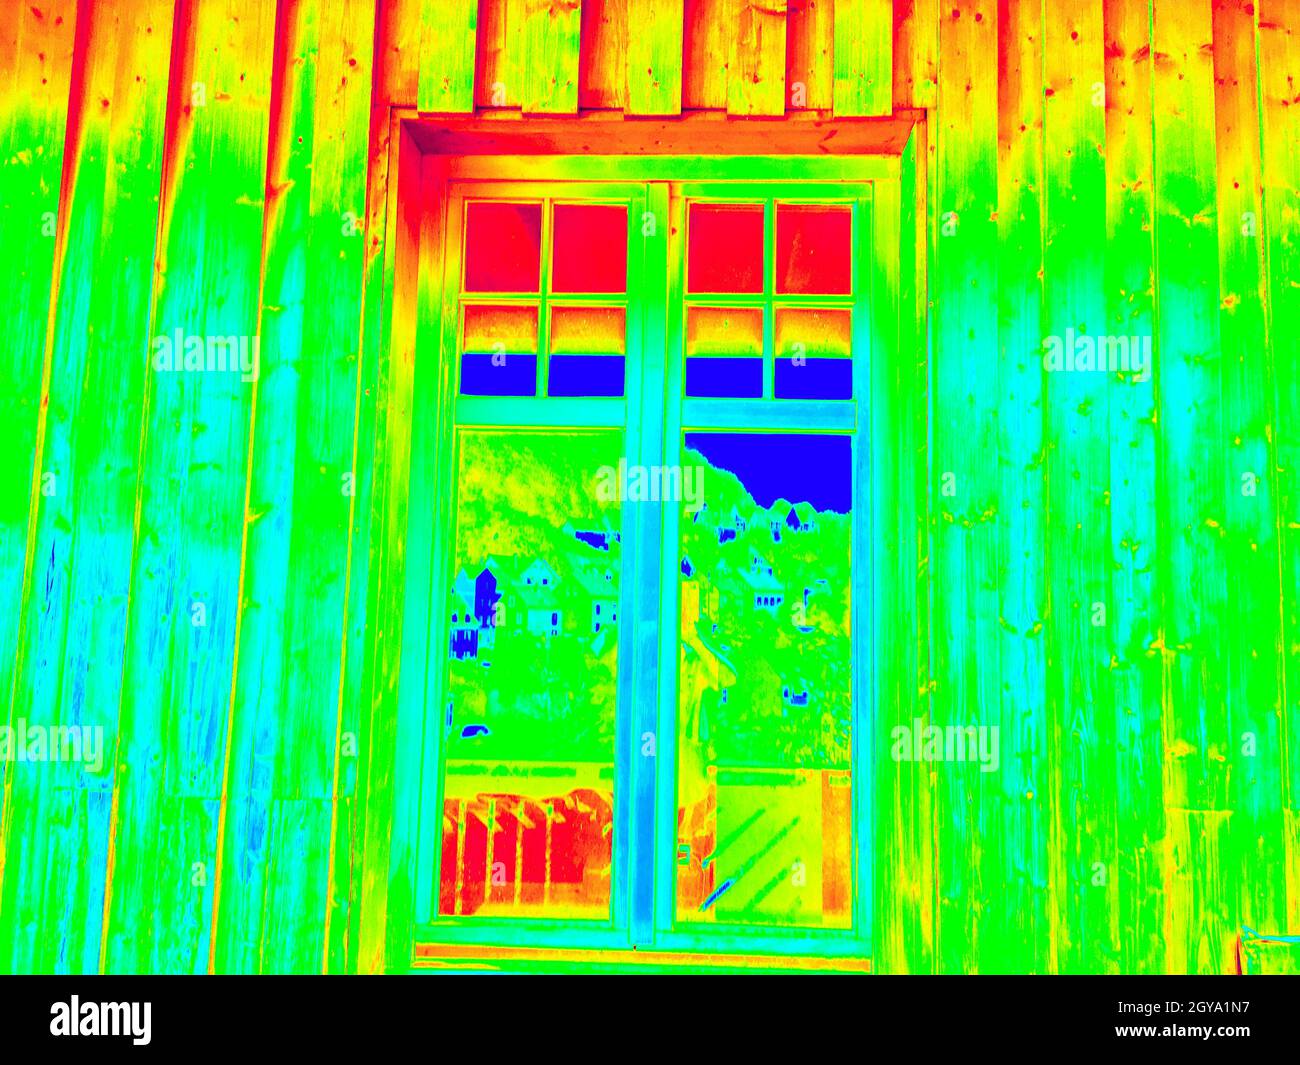 Wärmebild-Aufzeichnungen von Temperaturunterschieden im Infrarotlicht Stockfoto